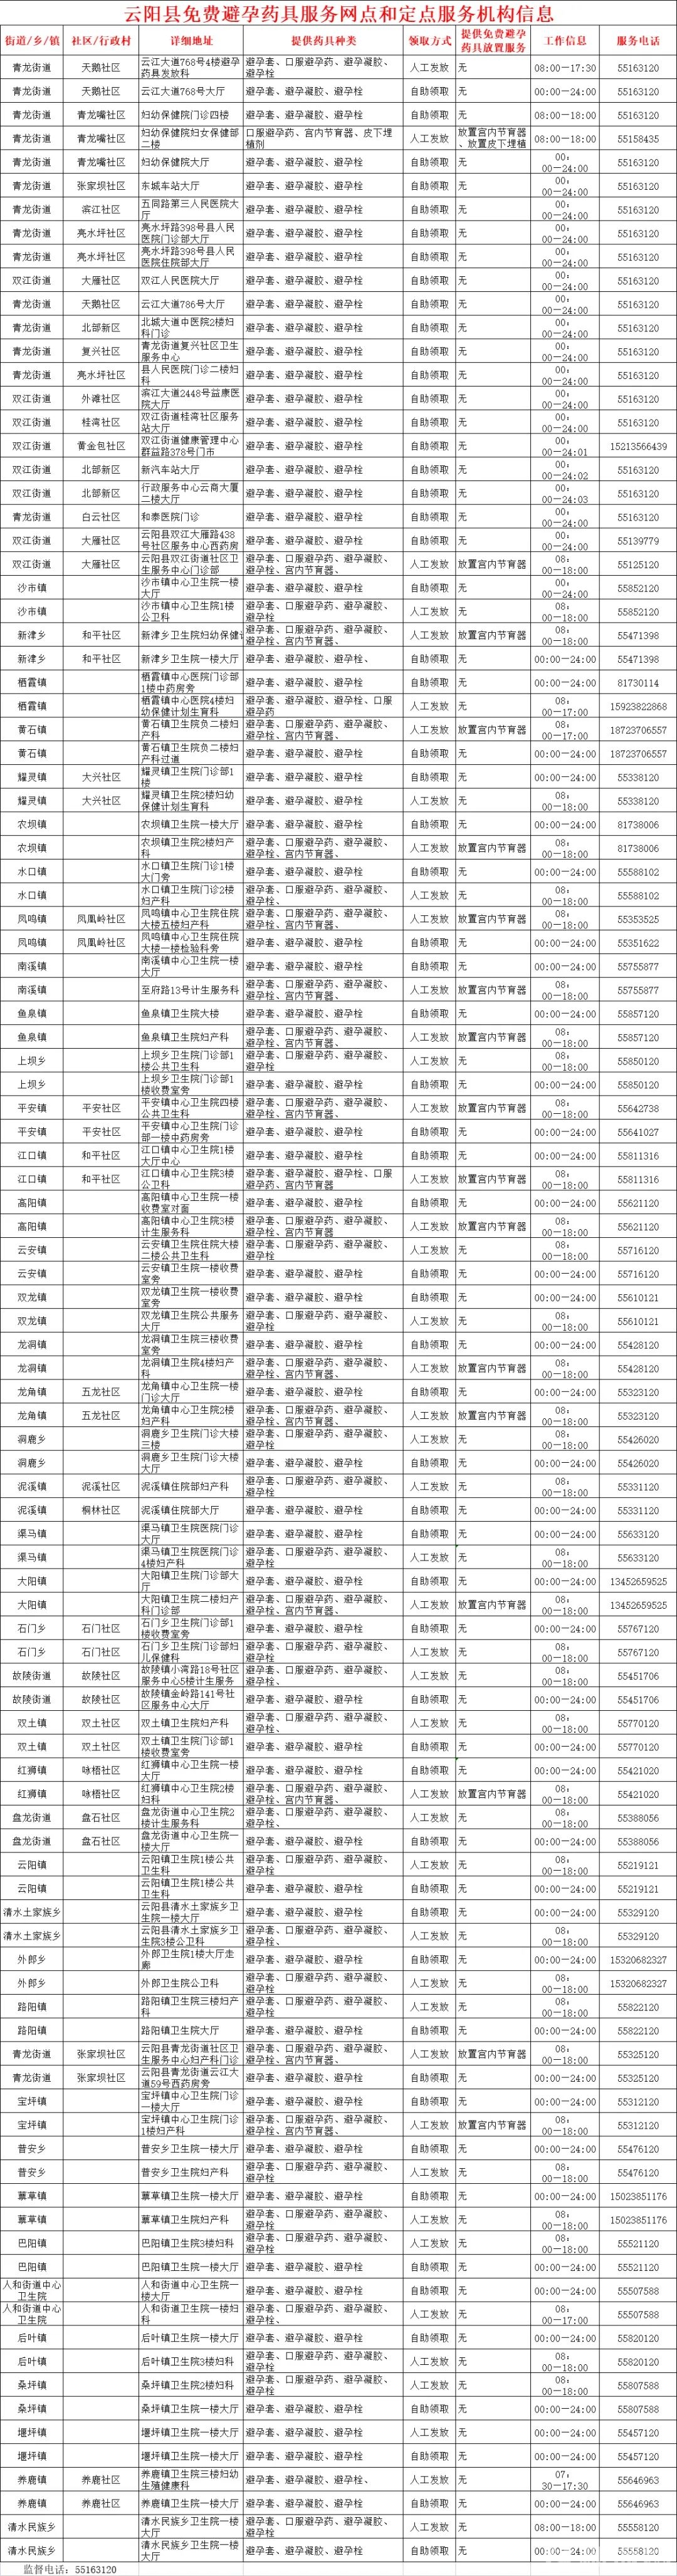 云阳县免费避孕药具服务网点  和定点服务机构信息